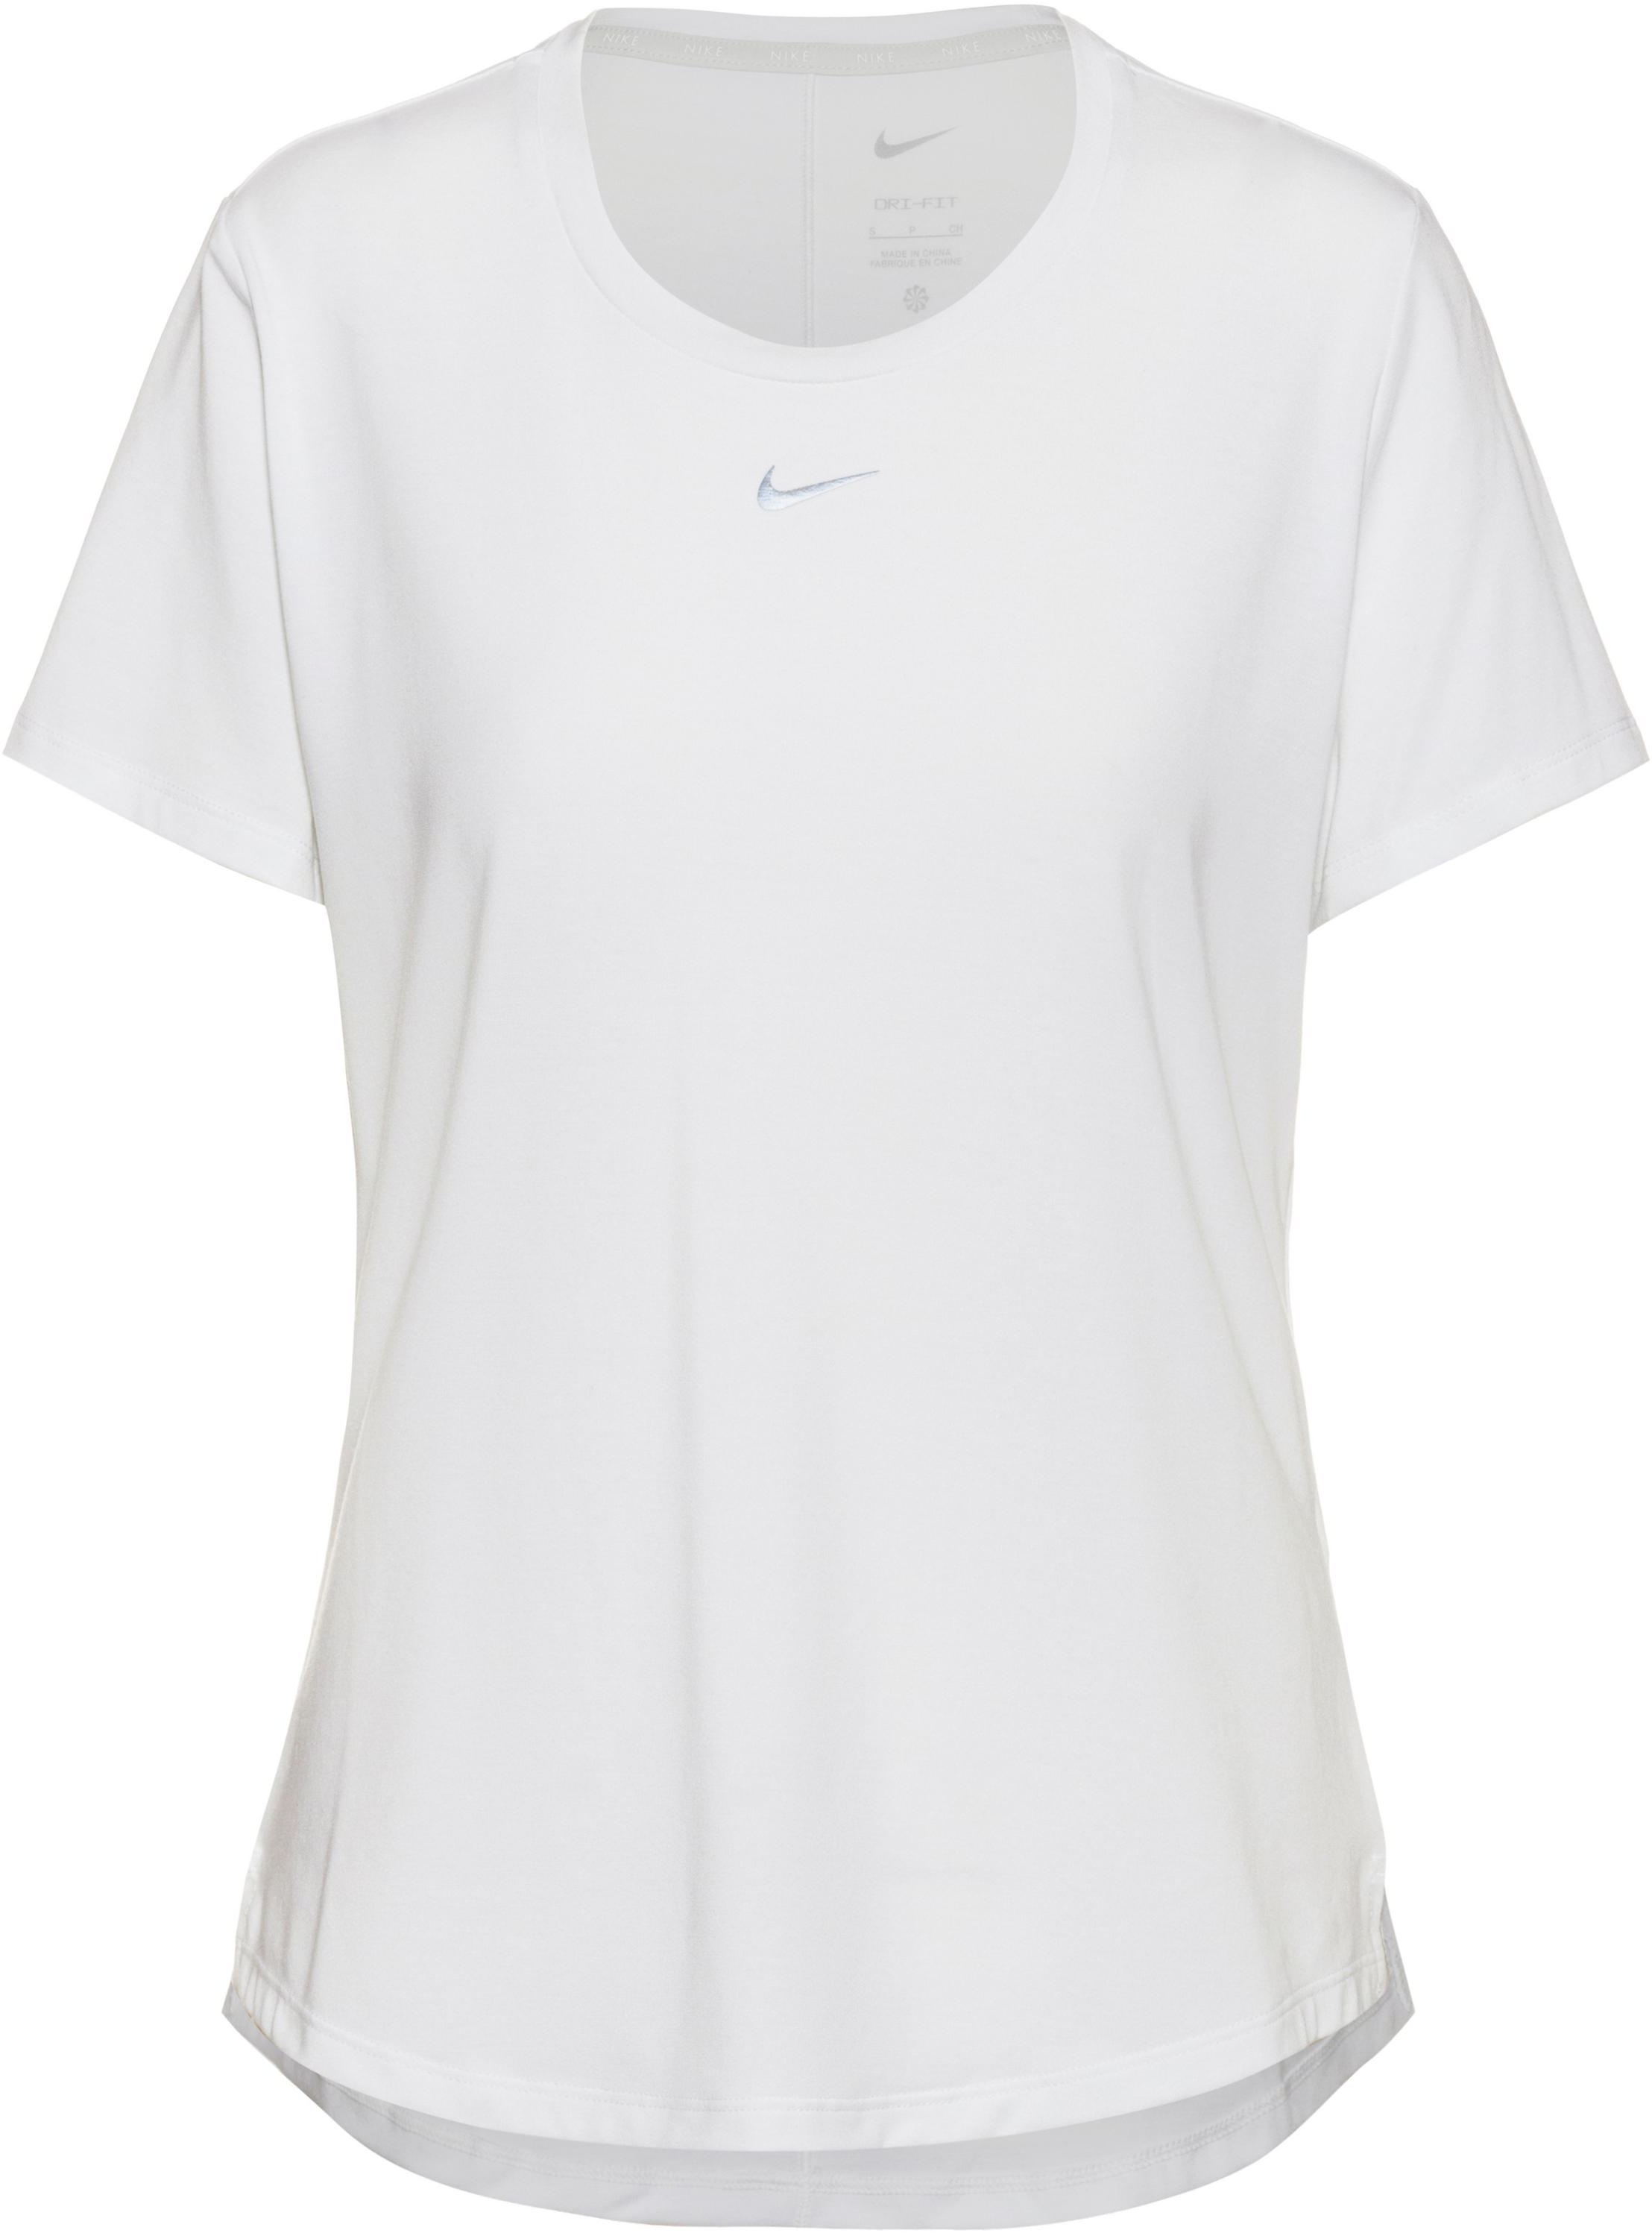 Nike Dri-FIT One Luxe Tennisshirt Damen in white-reflective silv, Größe L - weiß